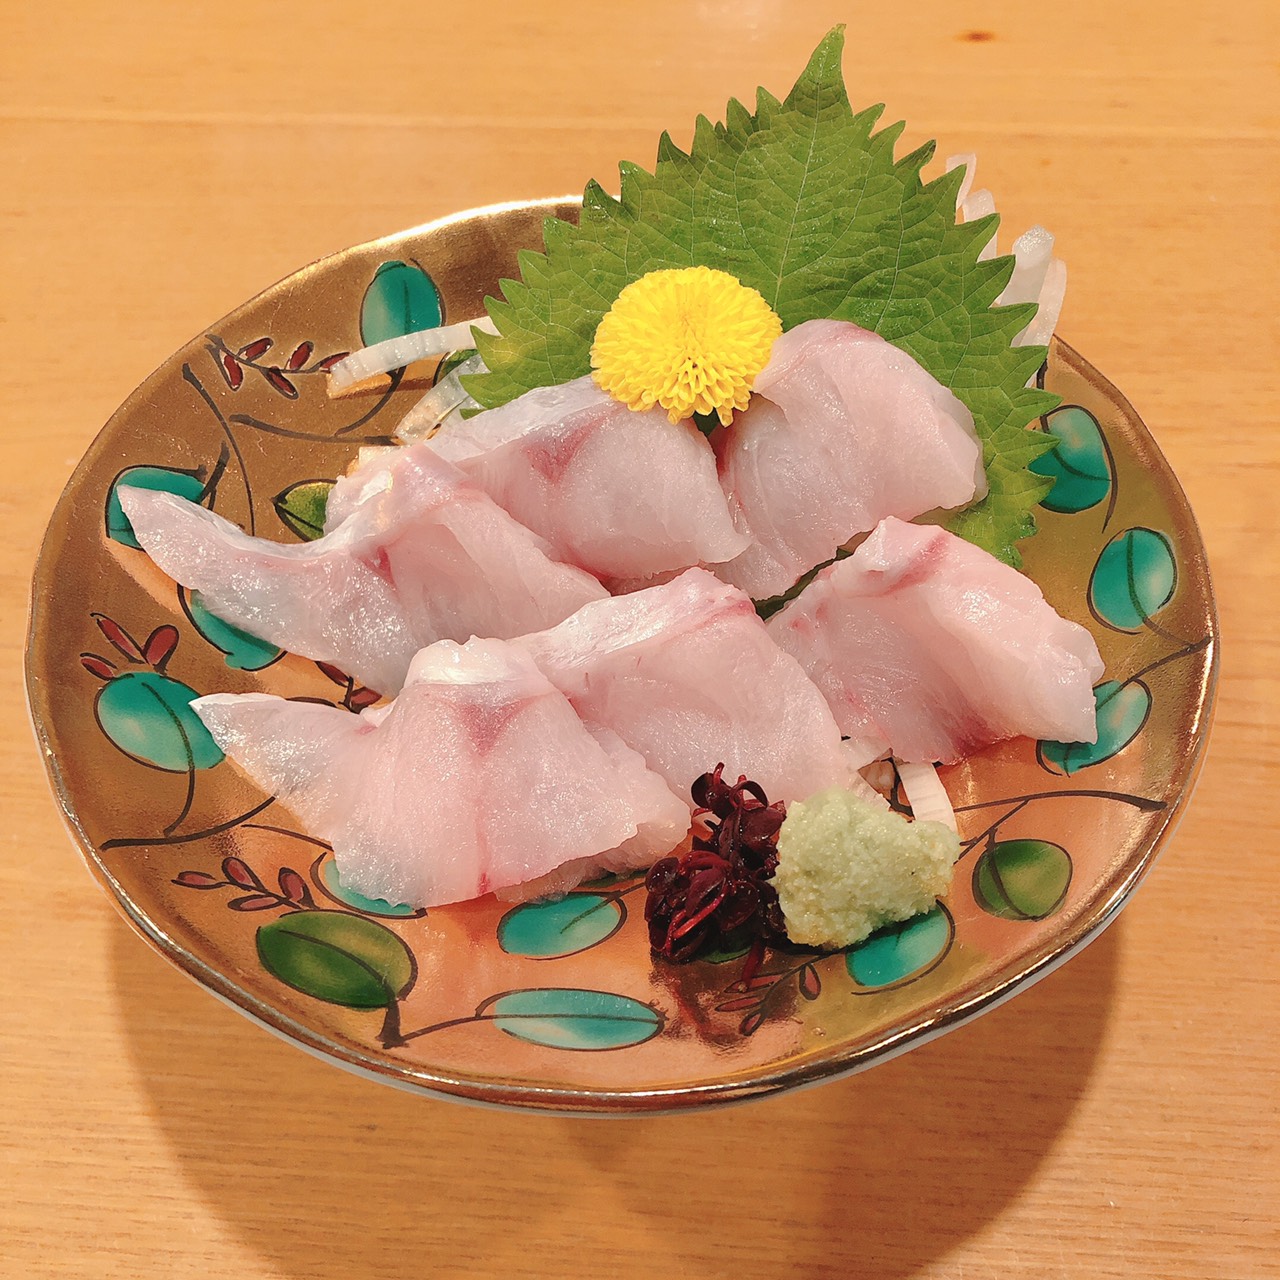 のどぐろ刺身 今が旬 一品料理 加賀料理 金沢グルメの割烹料理店 お品書き 金沢市 人気のコース料理でおもてなし